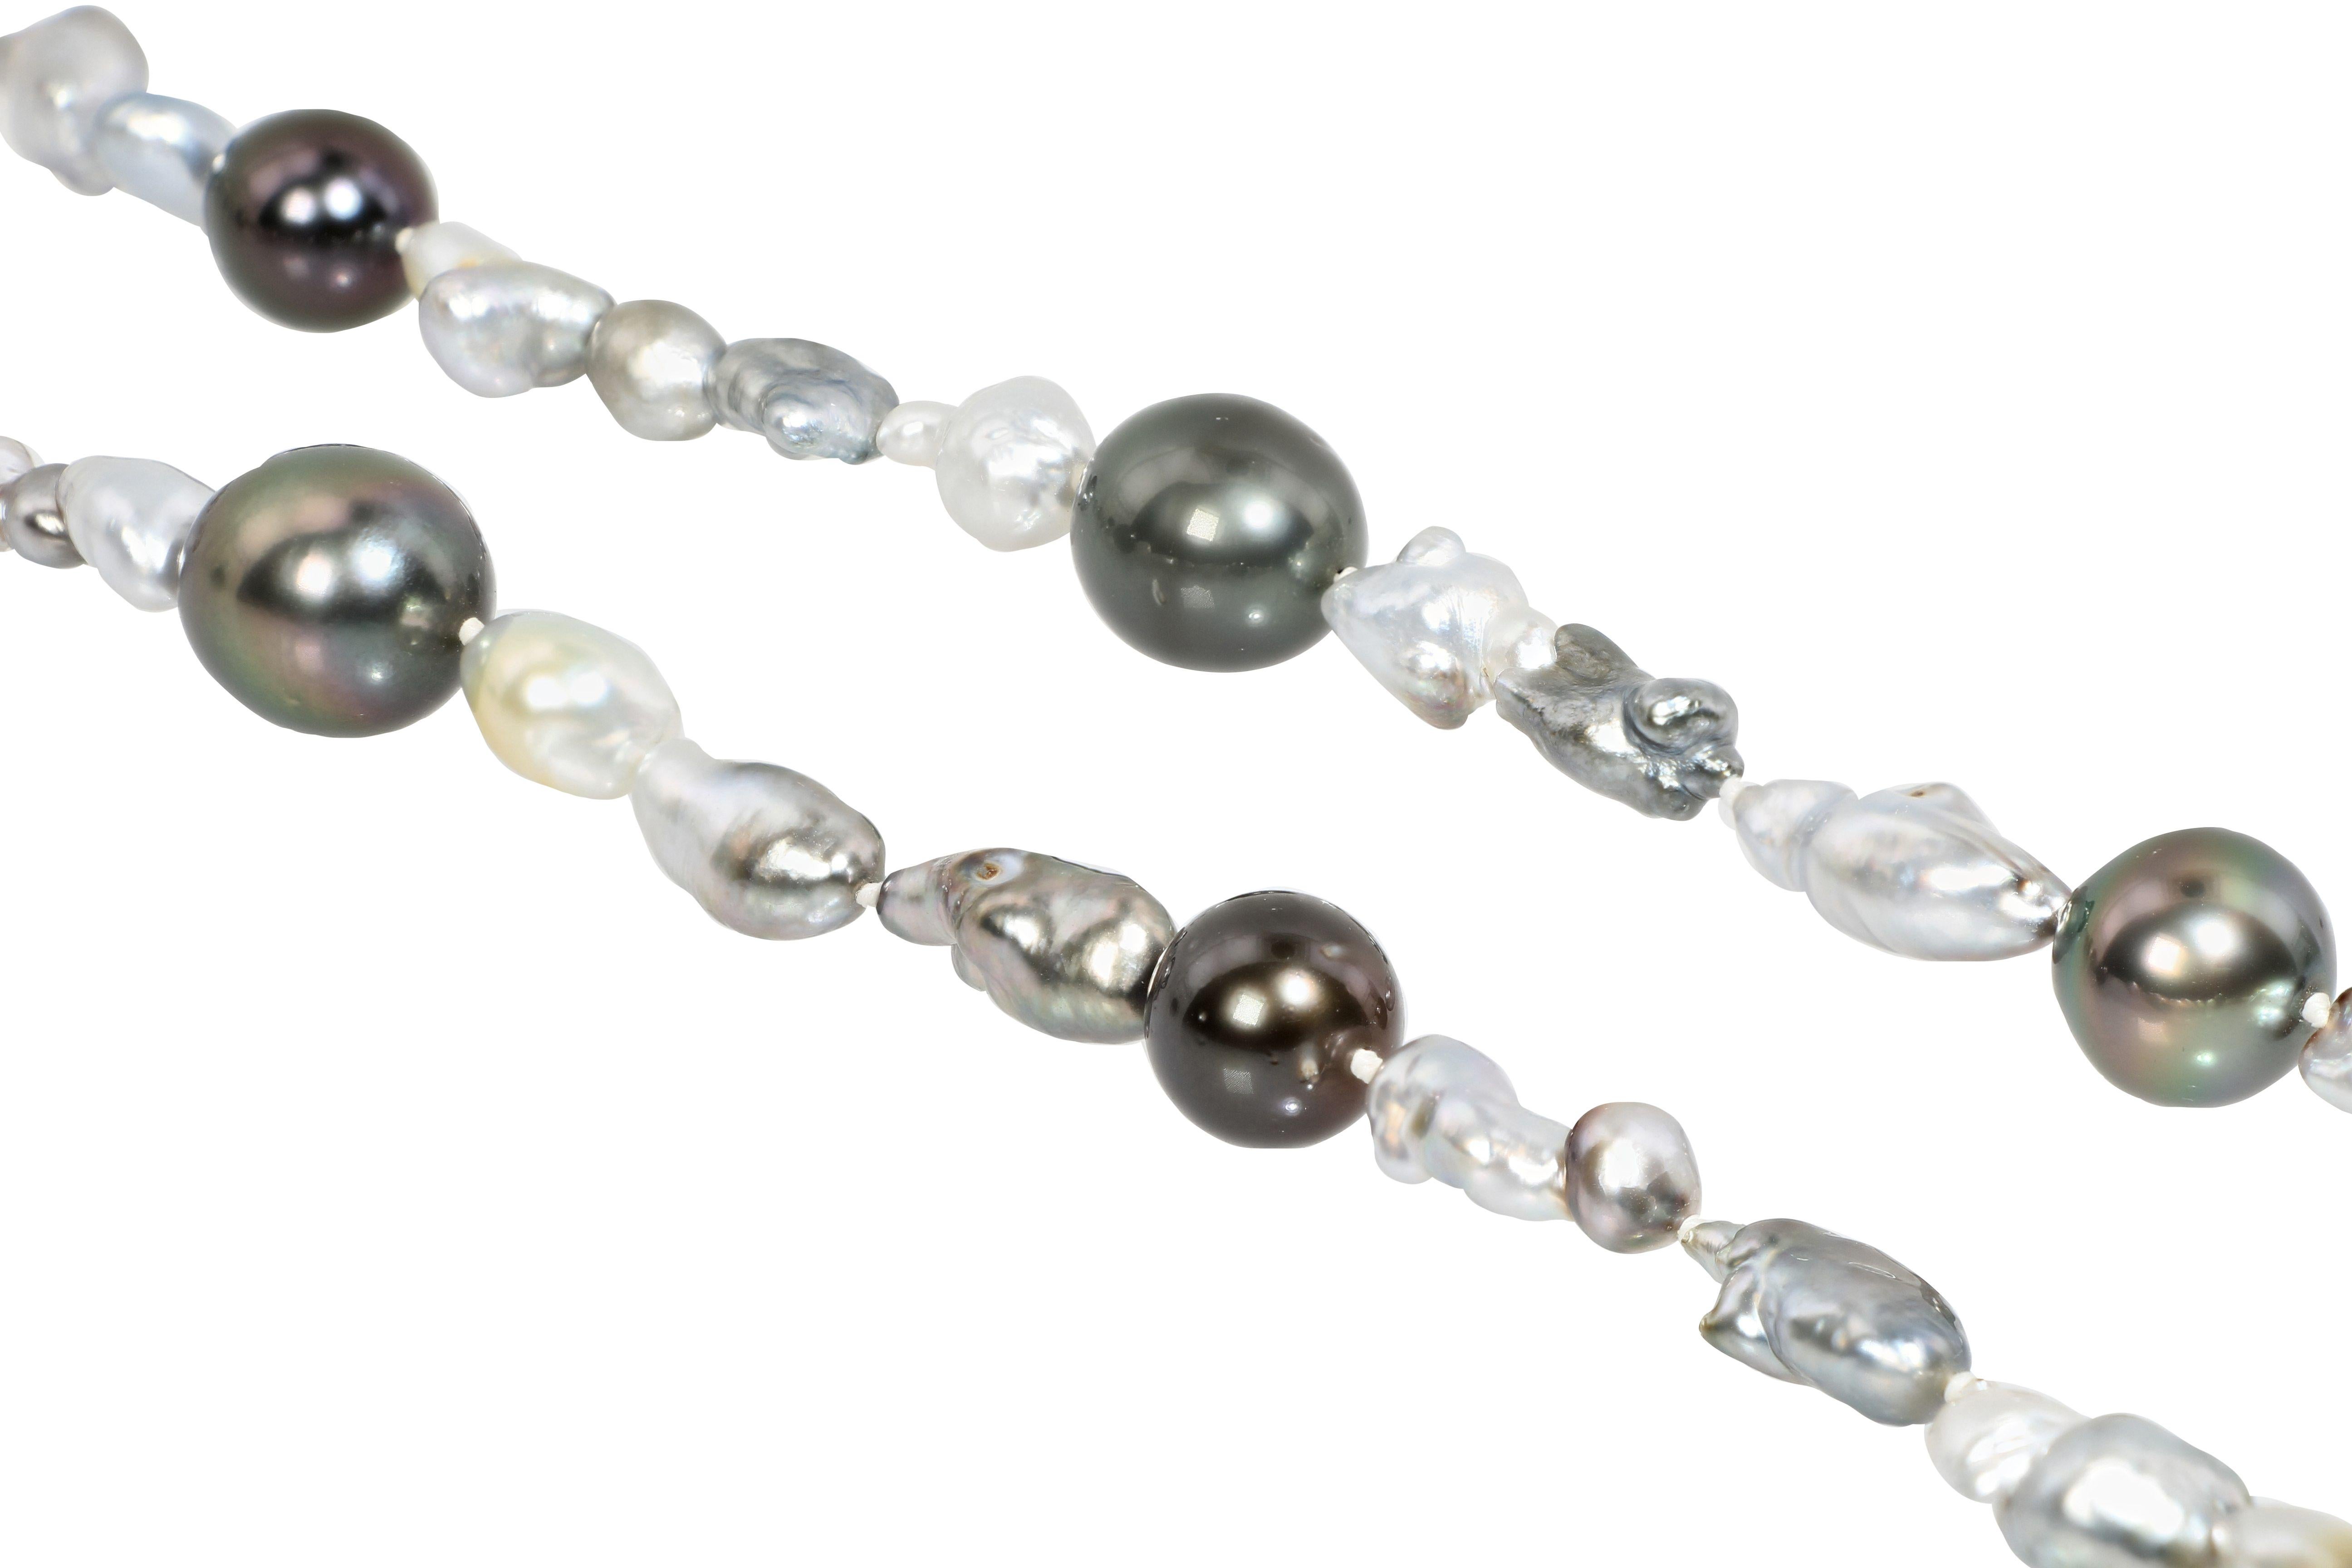        Eine einzigartige und modische Perlenkette, bestehend aus 73 Perlen unterschiedlicher Größe mit einem Durchmesser von 6 mm bis 11 mm, darunter Tahiti-Perlen und Südsee-Keshi-Perlen. Es ist ein sehr stilvolles und elegantes Schmuckstück, das